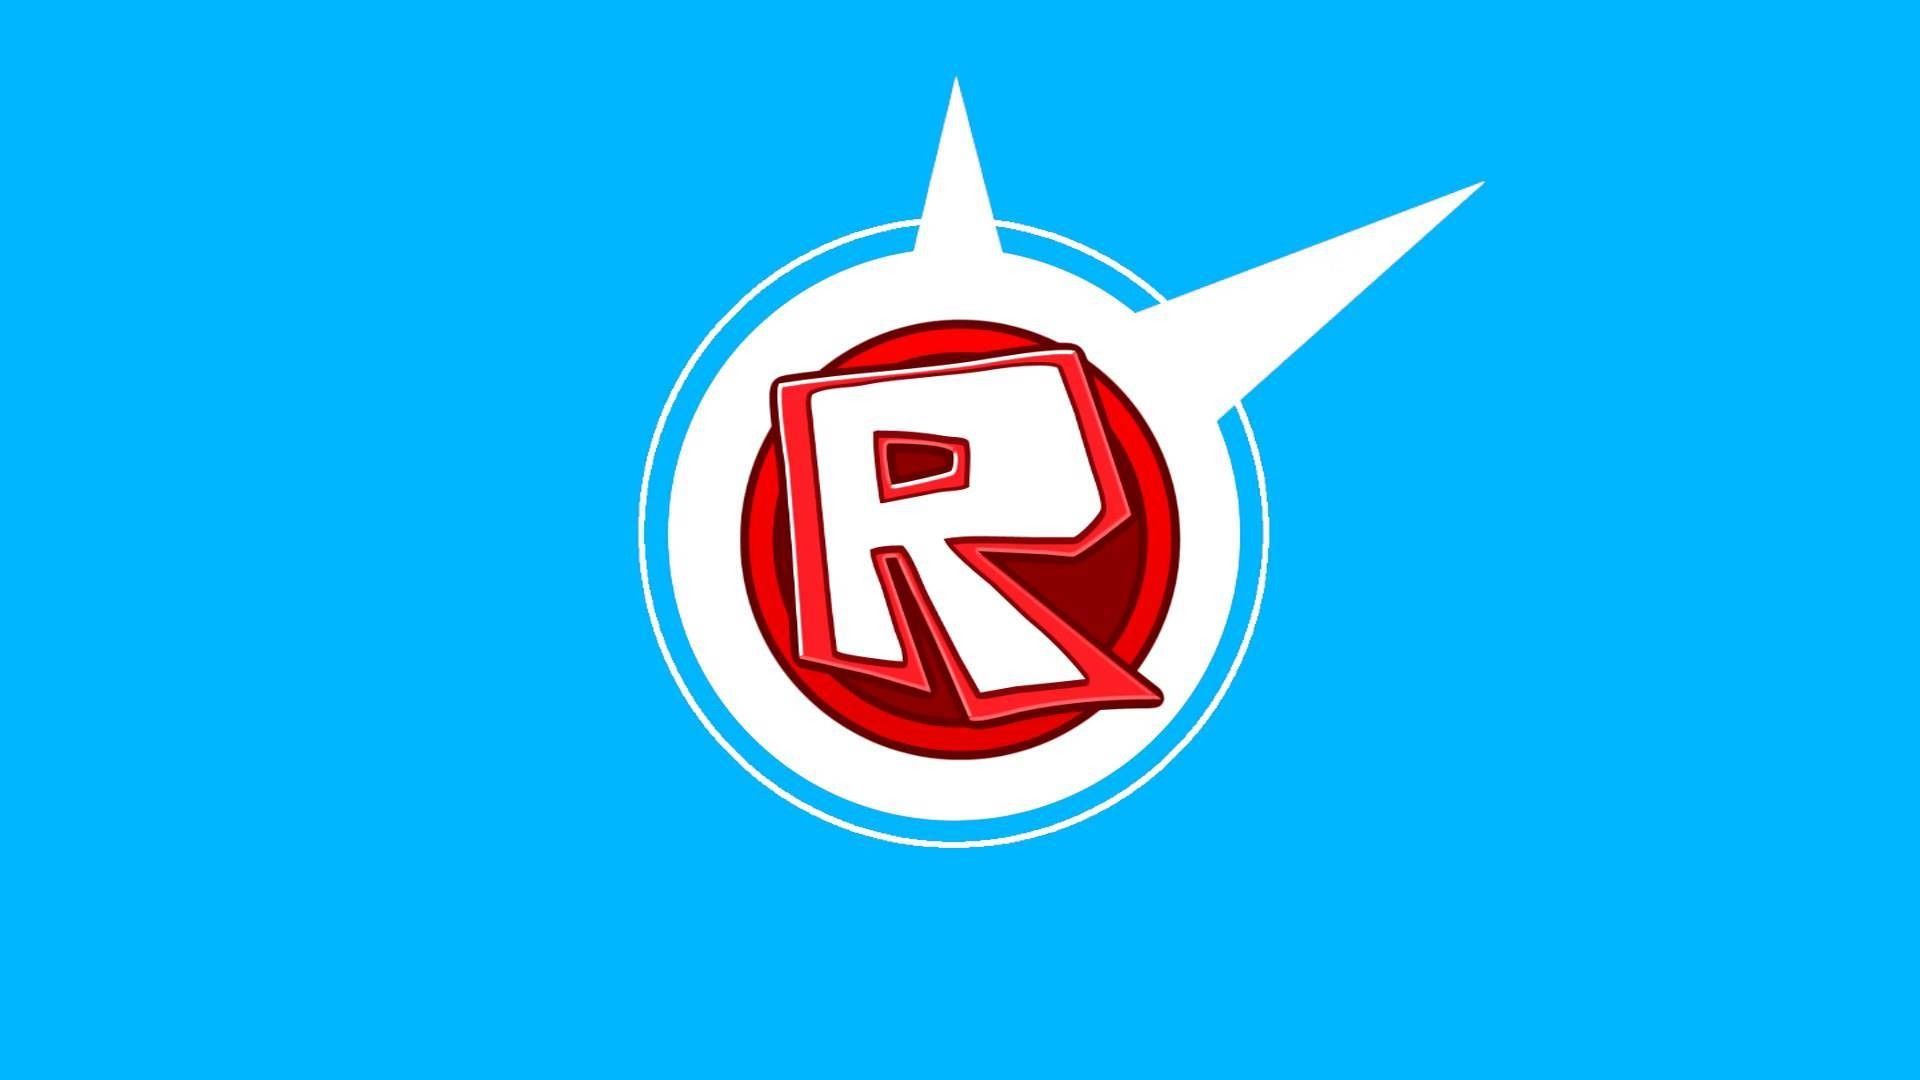 Roblox Corporation Logo Desktop Font, Computer, computer, logo, computer  Wallpaper png